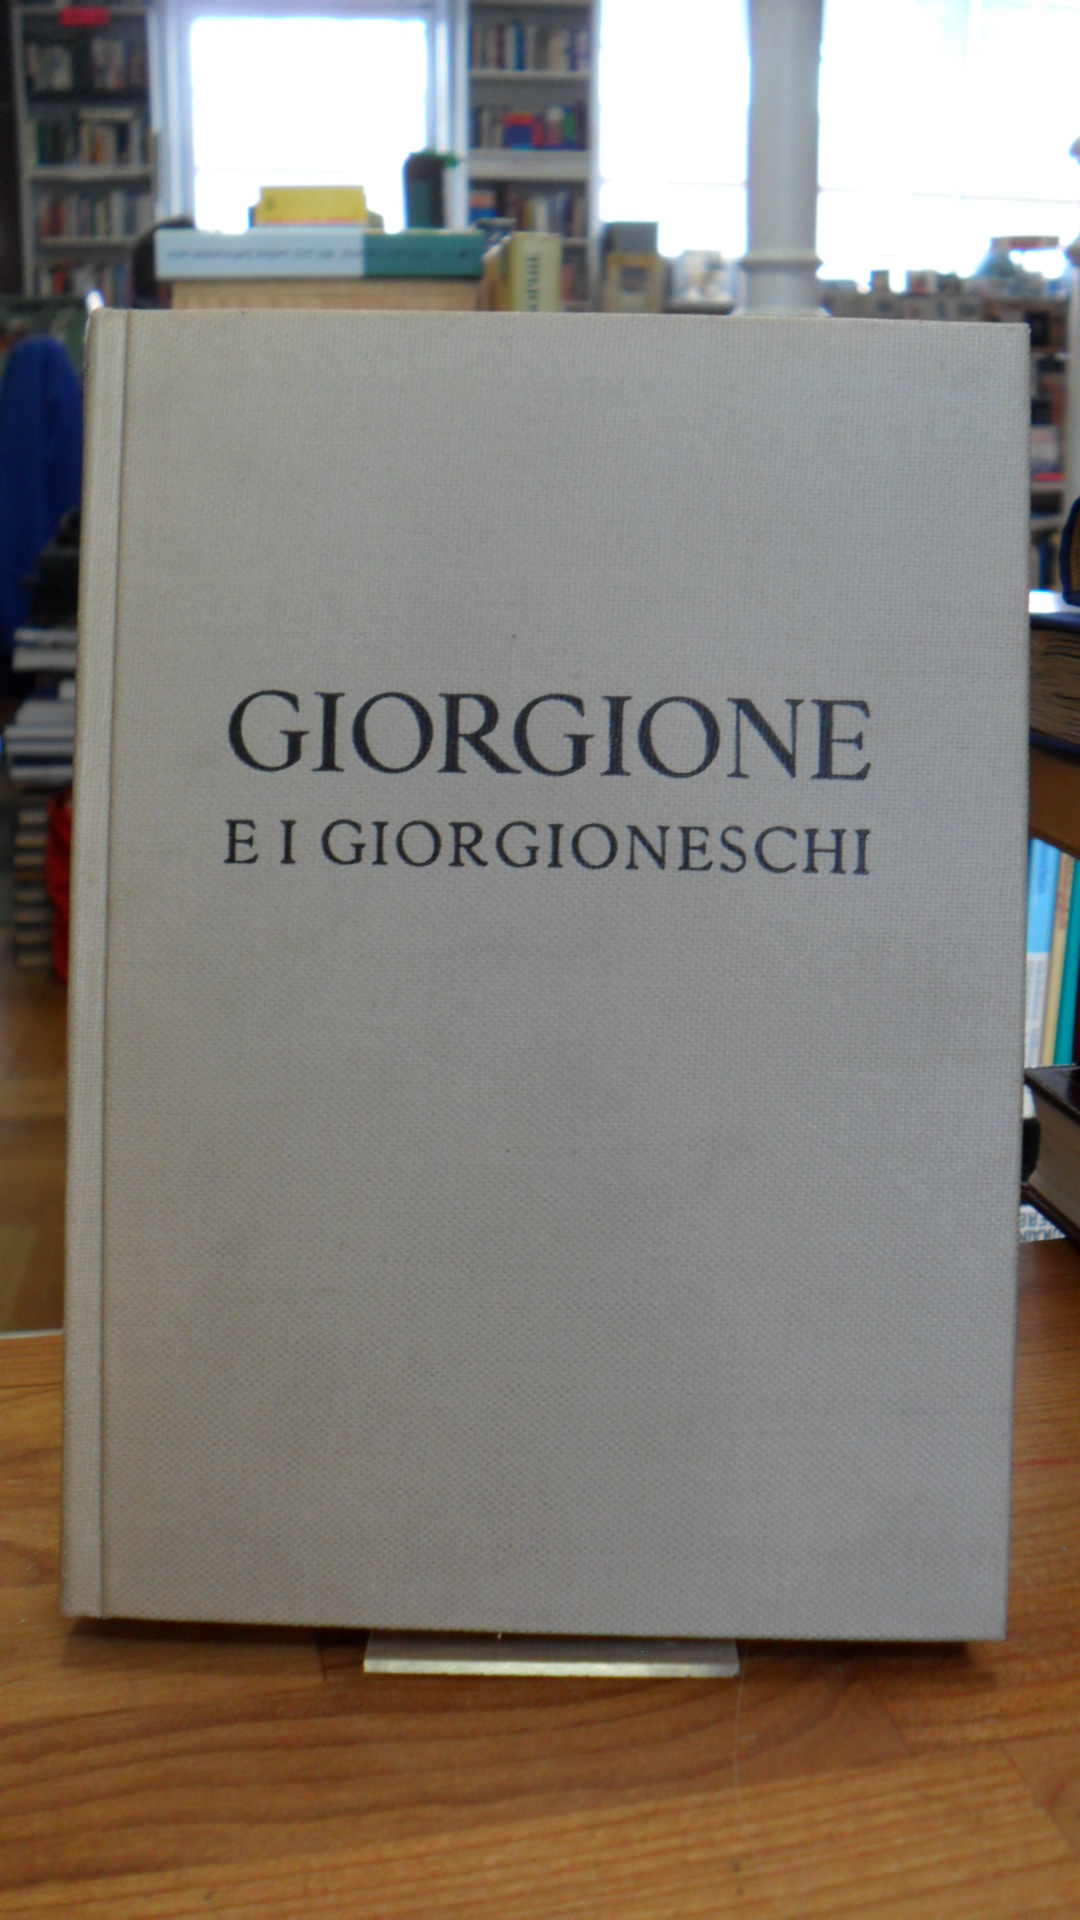 Giorgione / Pietro Zampetti, Giorgione e i Giorgioneschi – Catalogo della Mostra